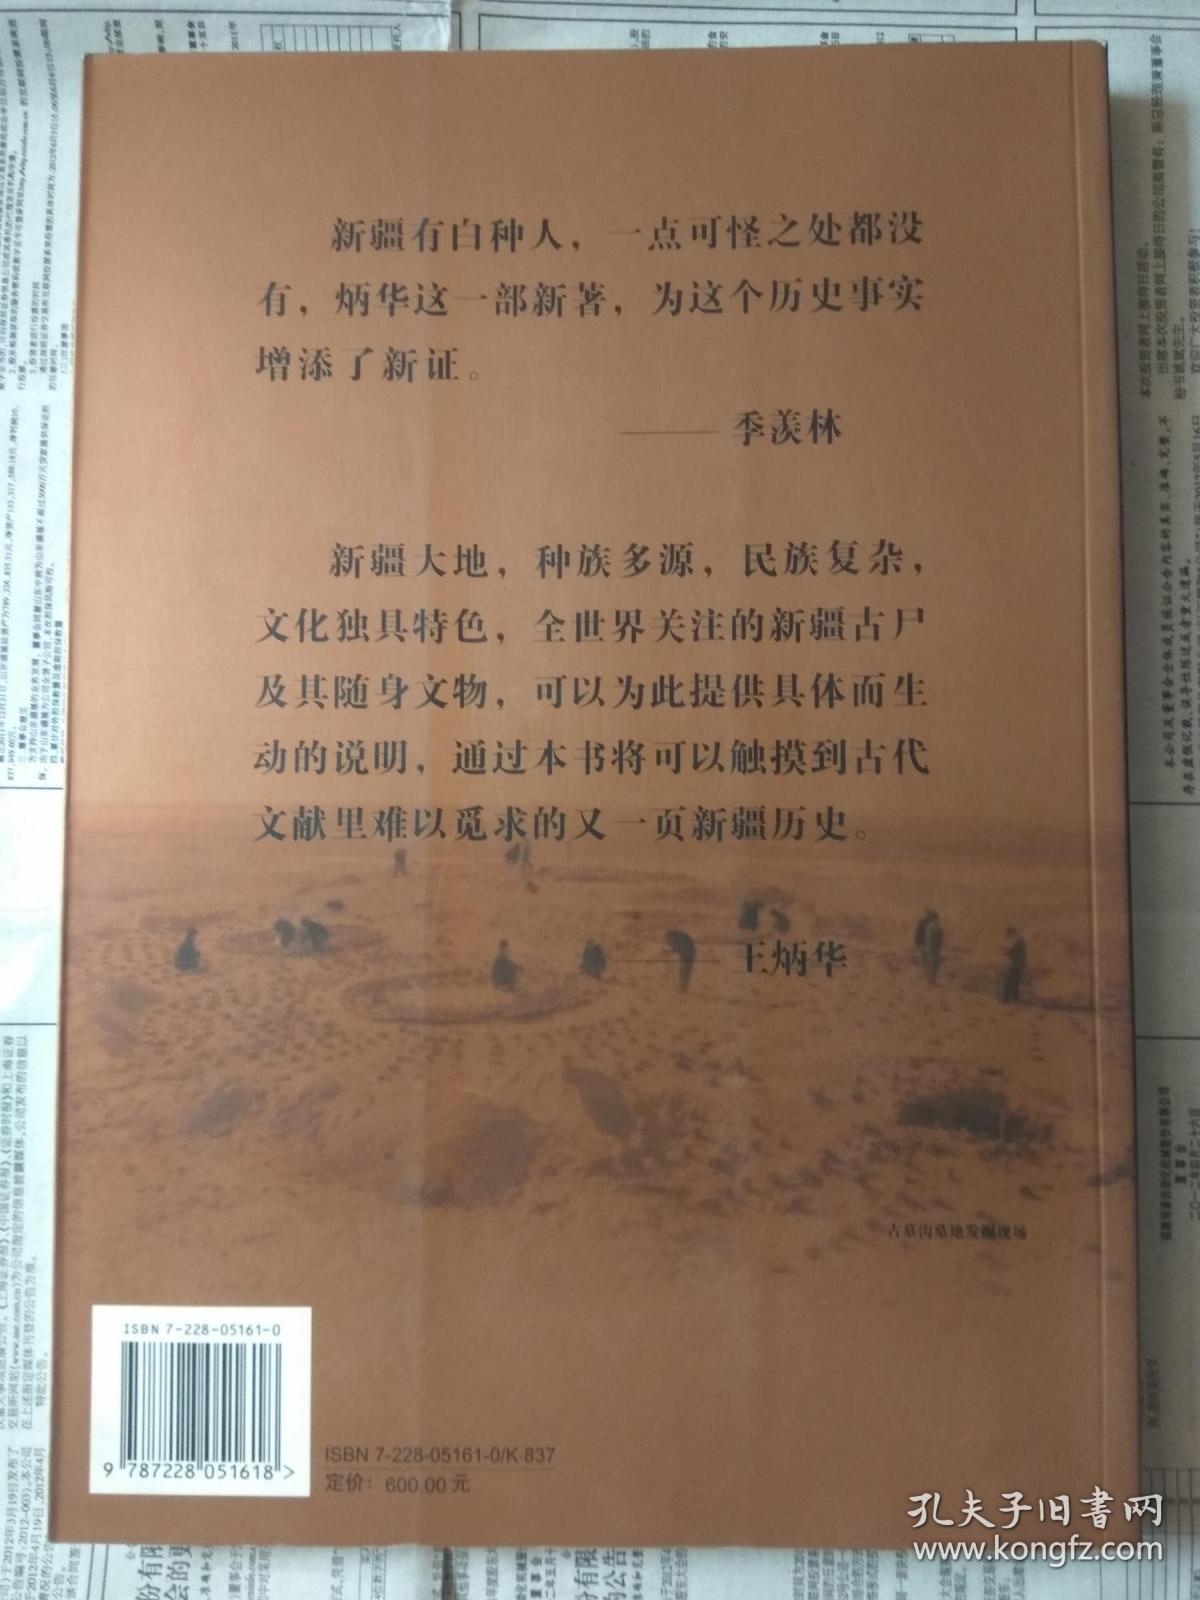 【有目录图片,请看图】新疆古尸：古代新疆居民及其文化 【中英文本。全彩铜版纸印刷】【重1公斤】